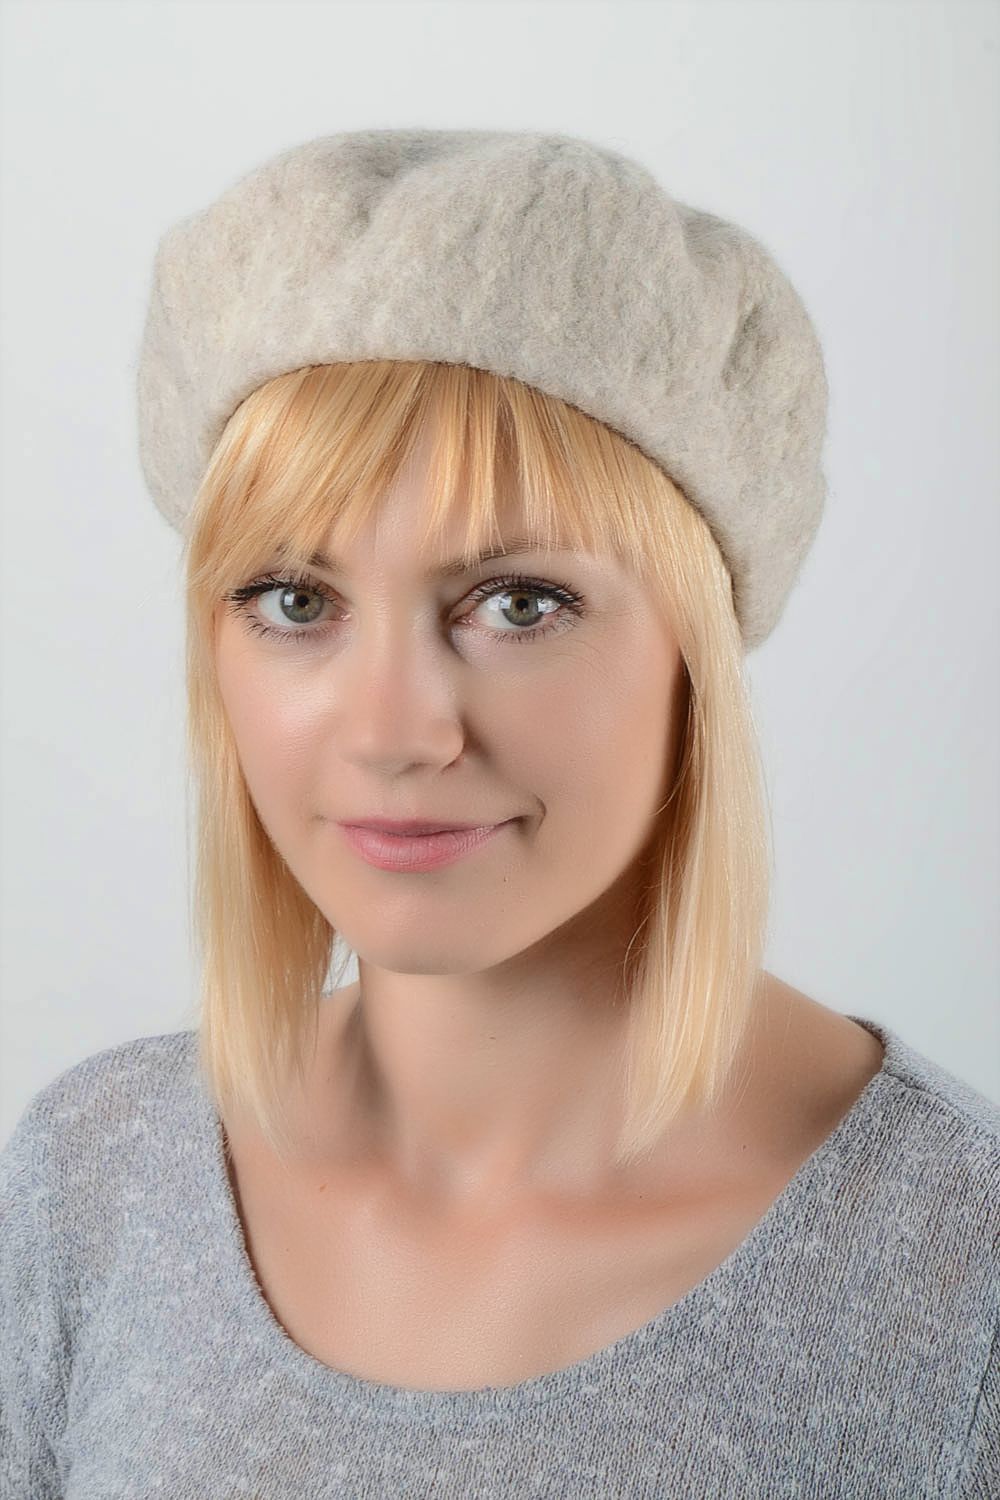 Handmade woolen beret stylish female headwear unusual cap for women cute hat photo 1